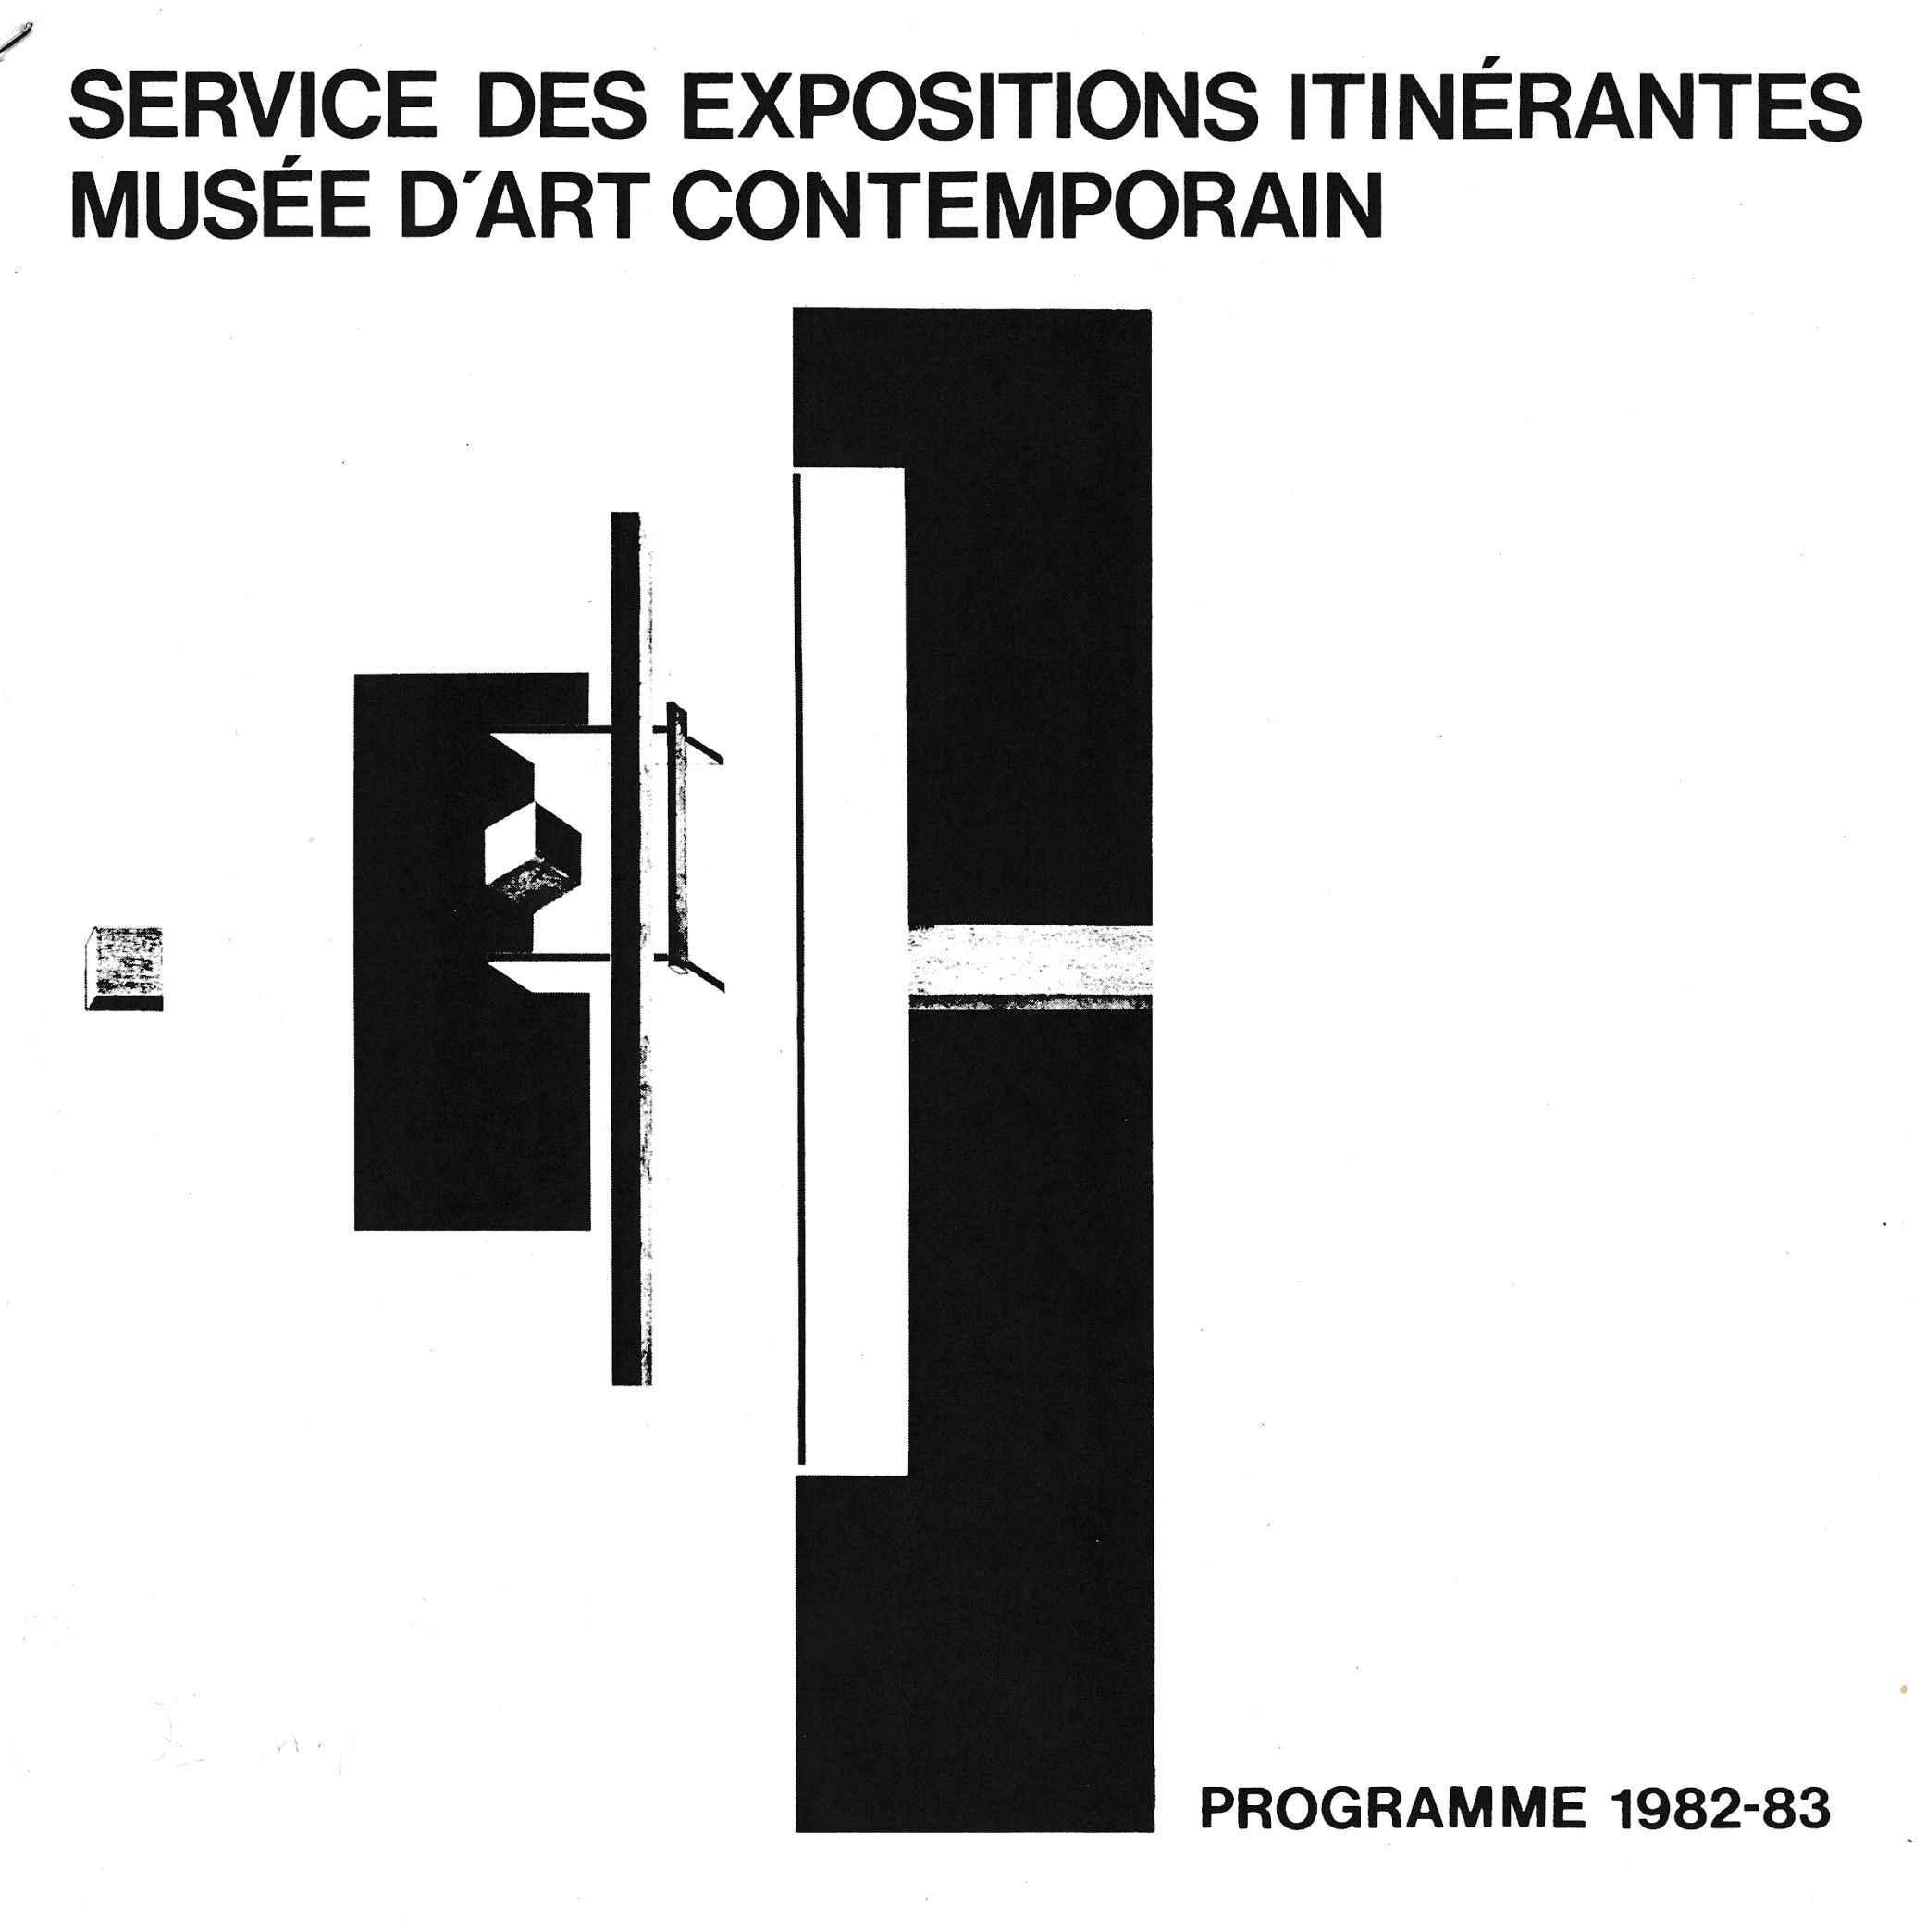 Couverture du livre Service des expositions itinérantes. Programme 1982-83, Montréal, Musée d’art contemporain, [1982].